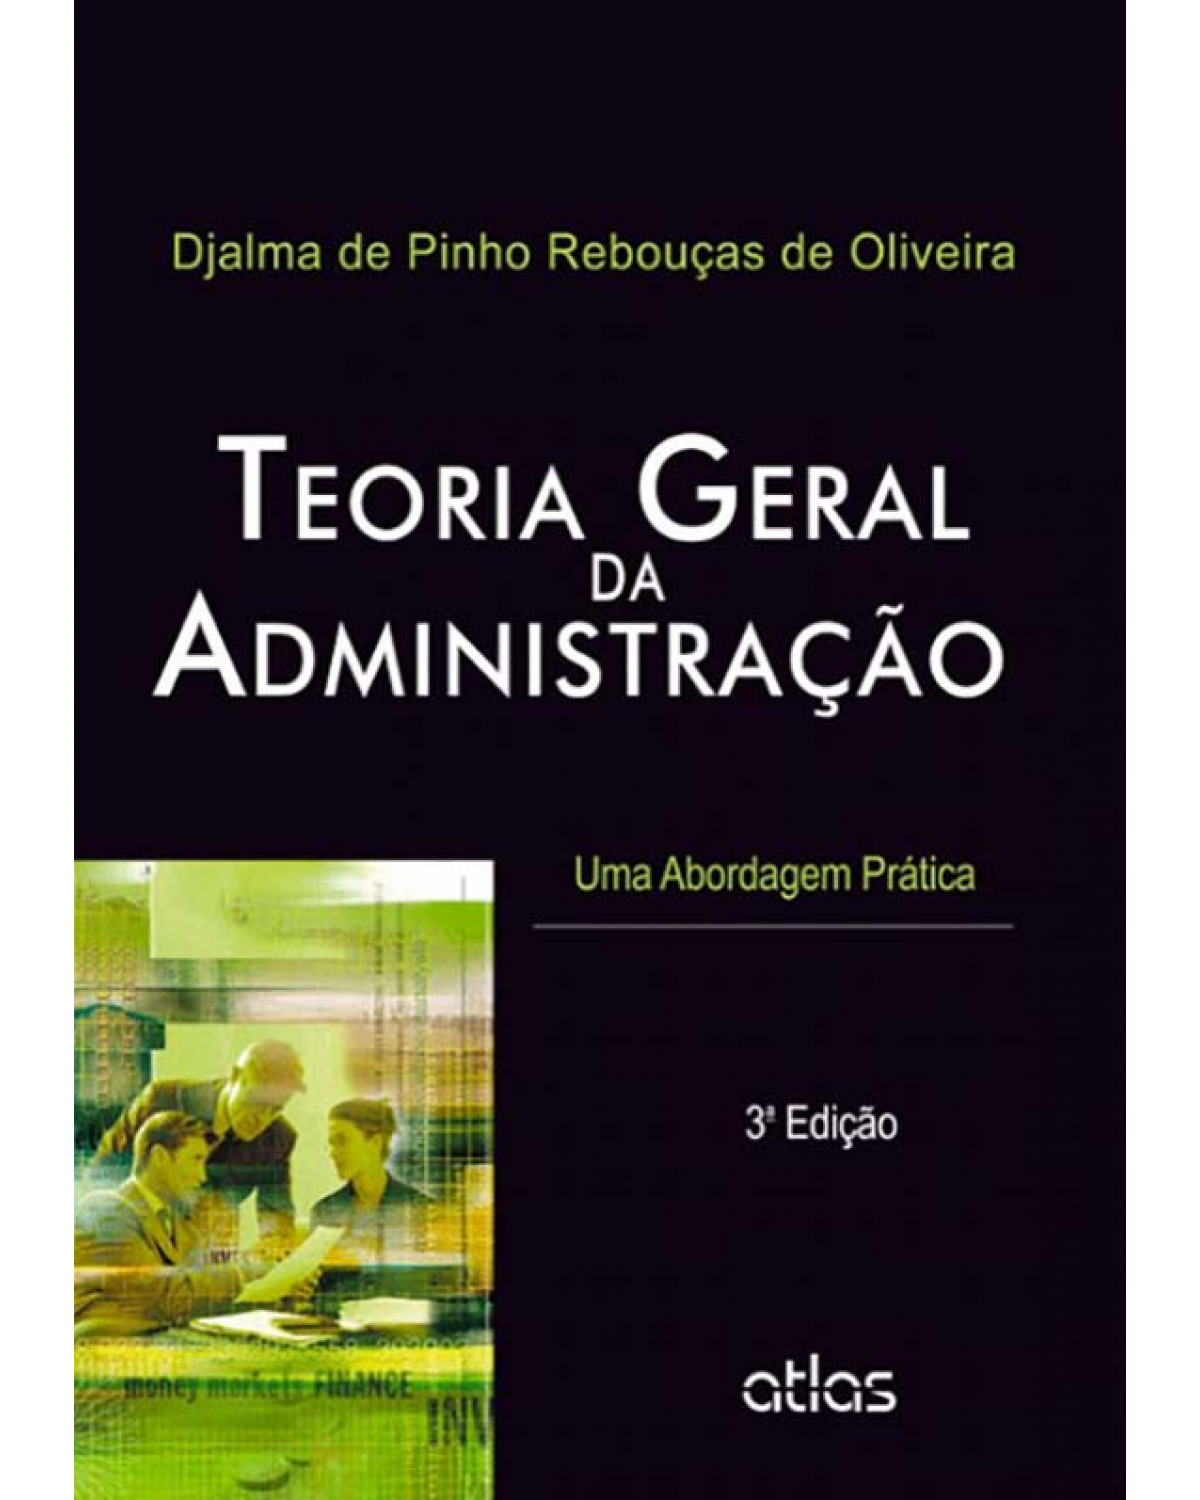 Teoria geral da administração - Uma abordagem prática - 3ª Edição | 2012